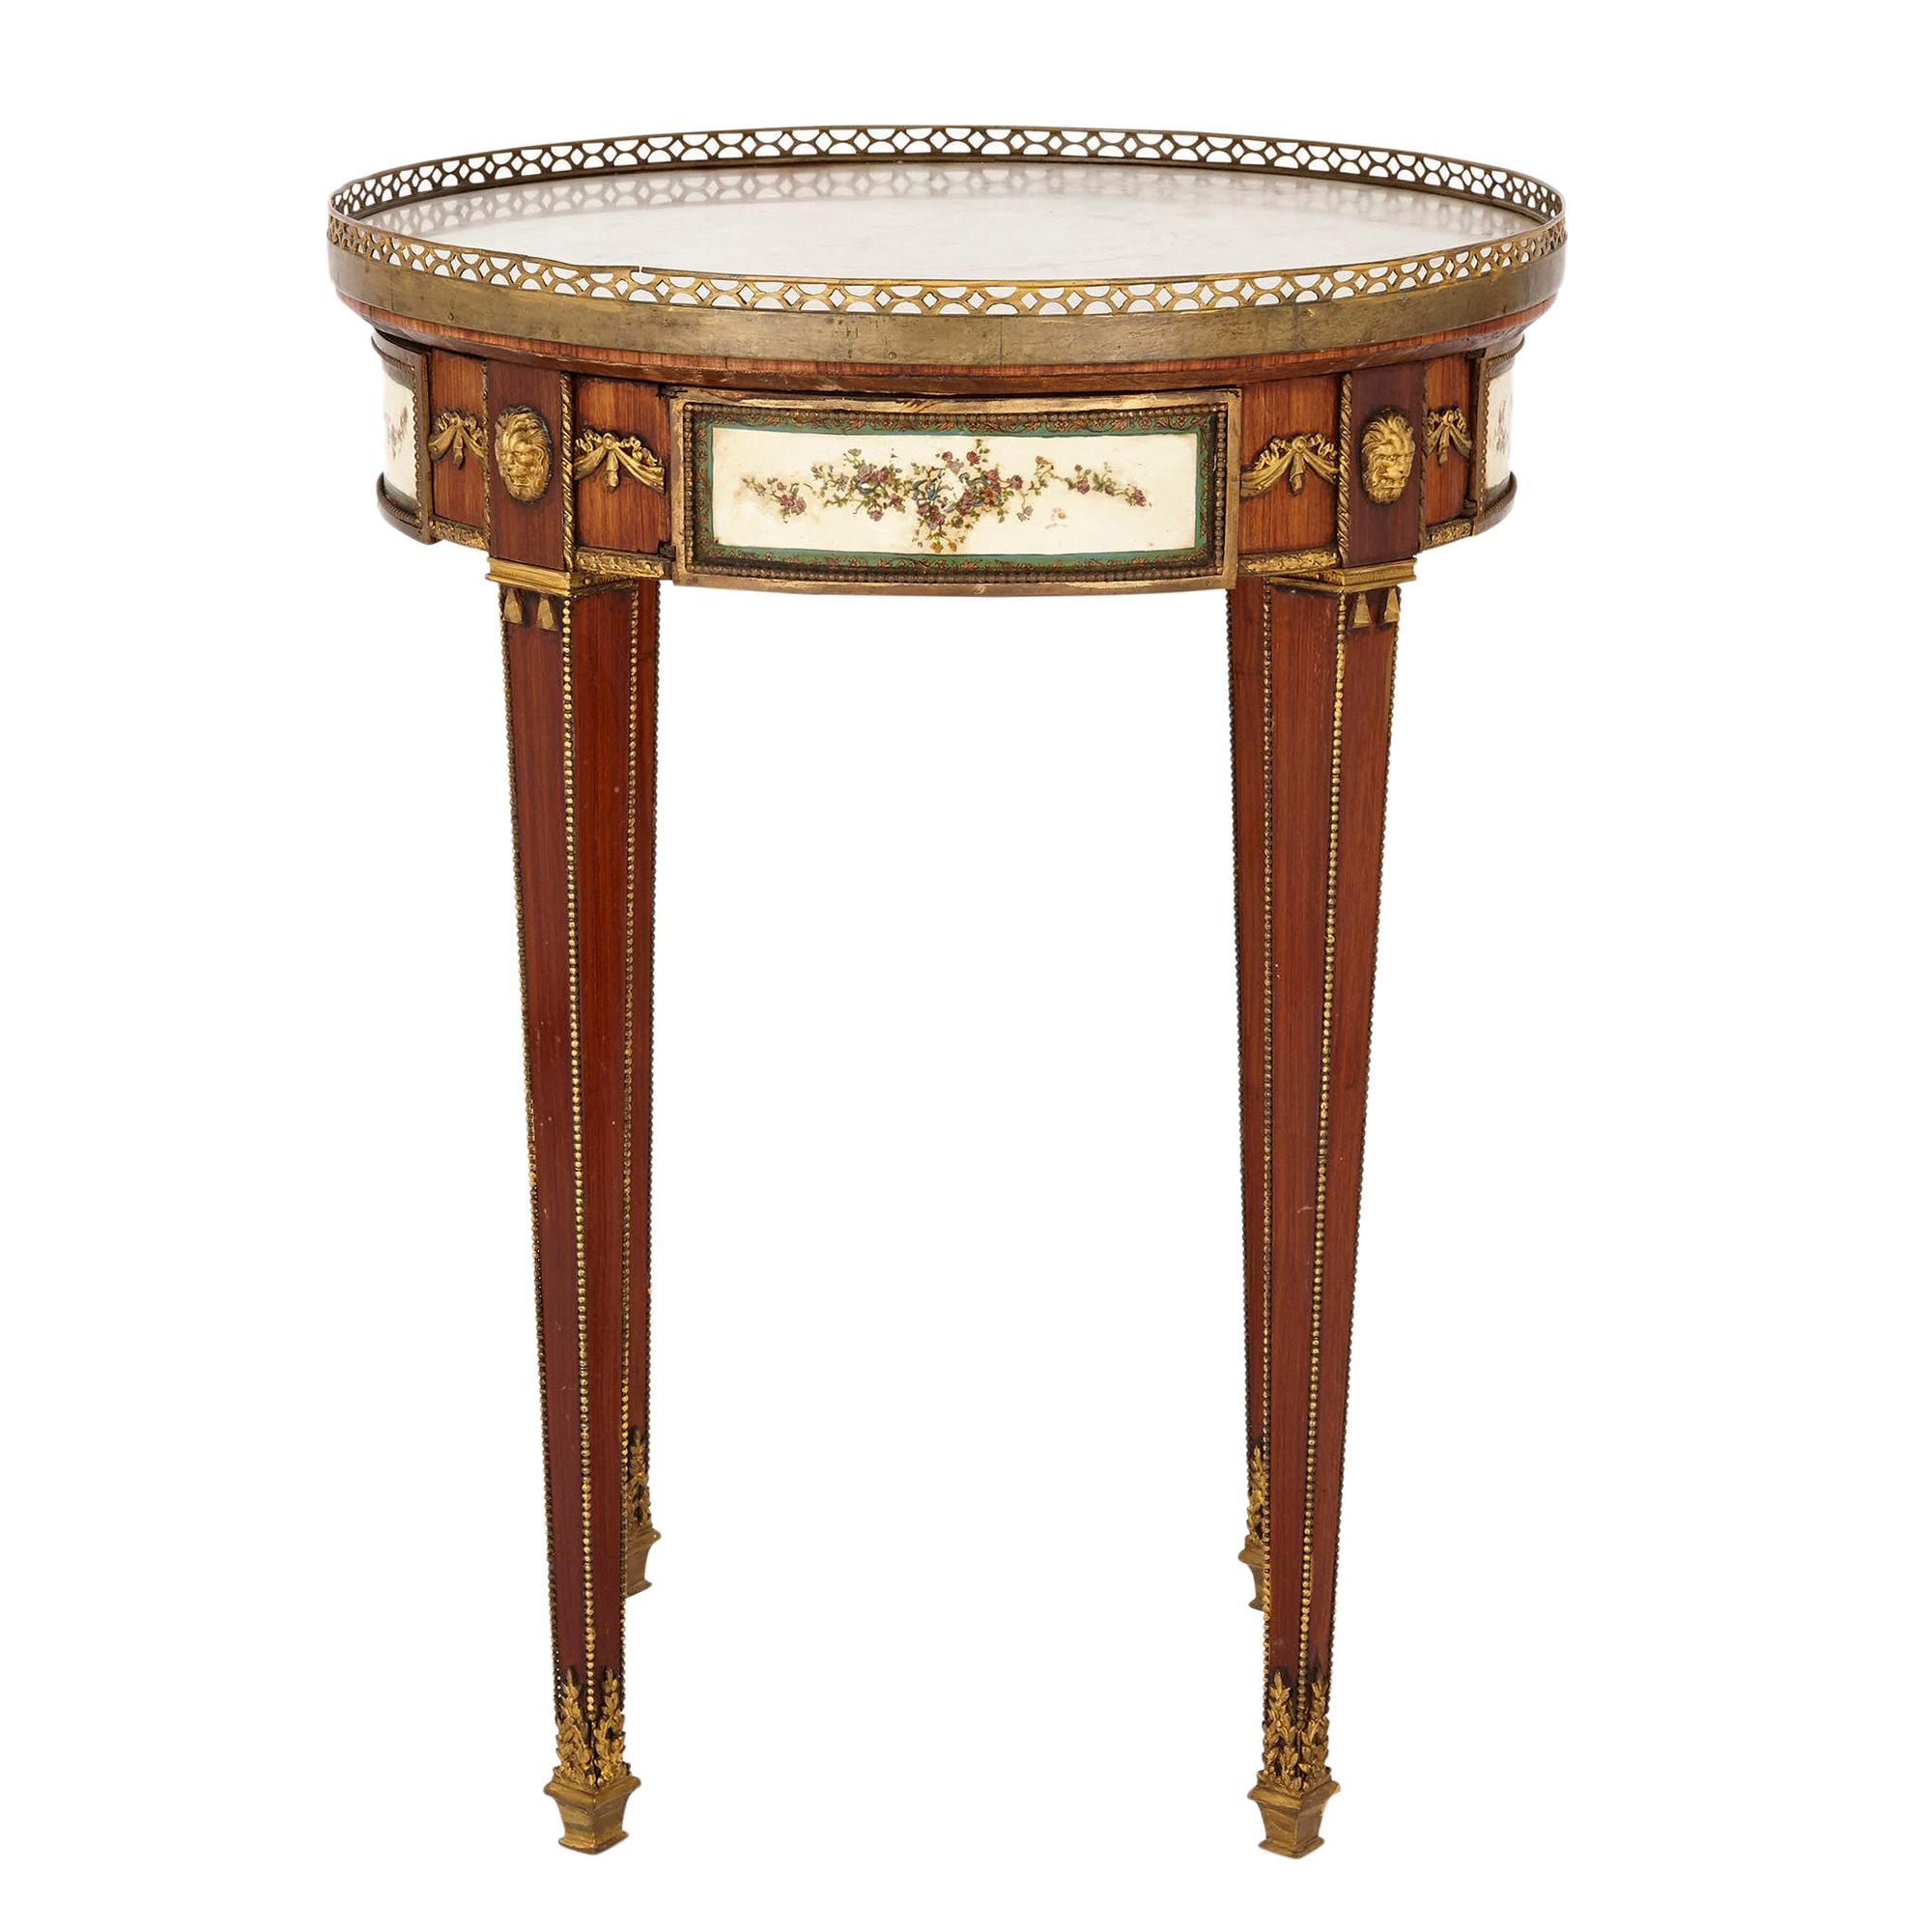 Table d'appoint en bois de style néoclassique monté sur bronze doré